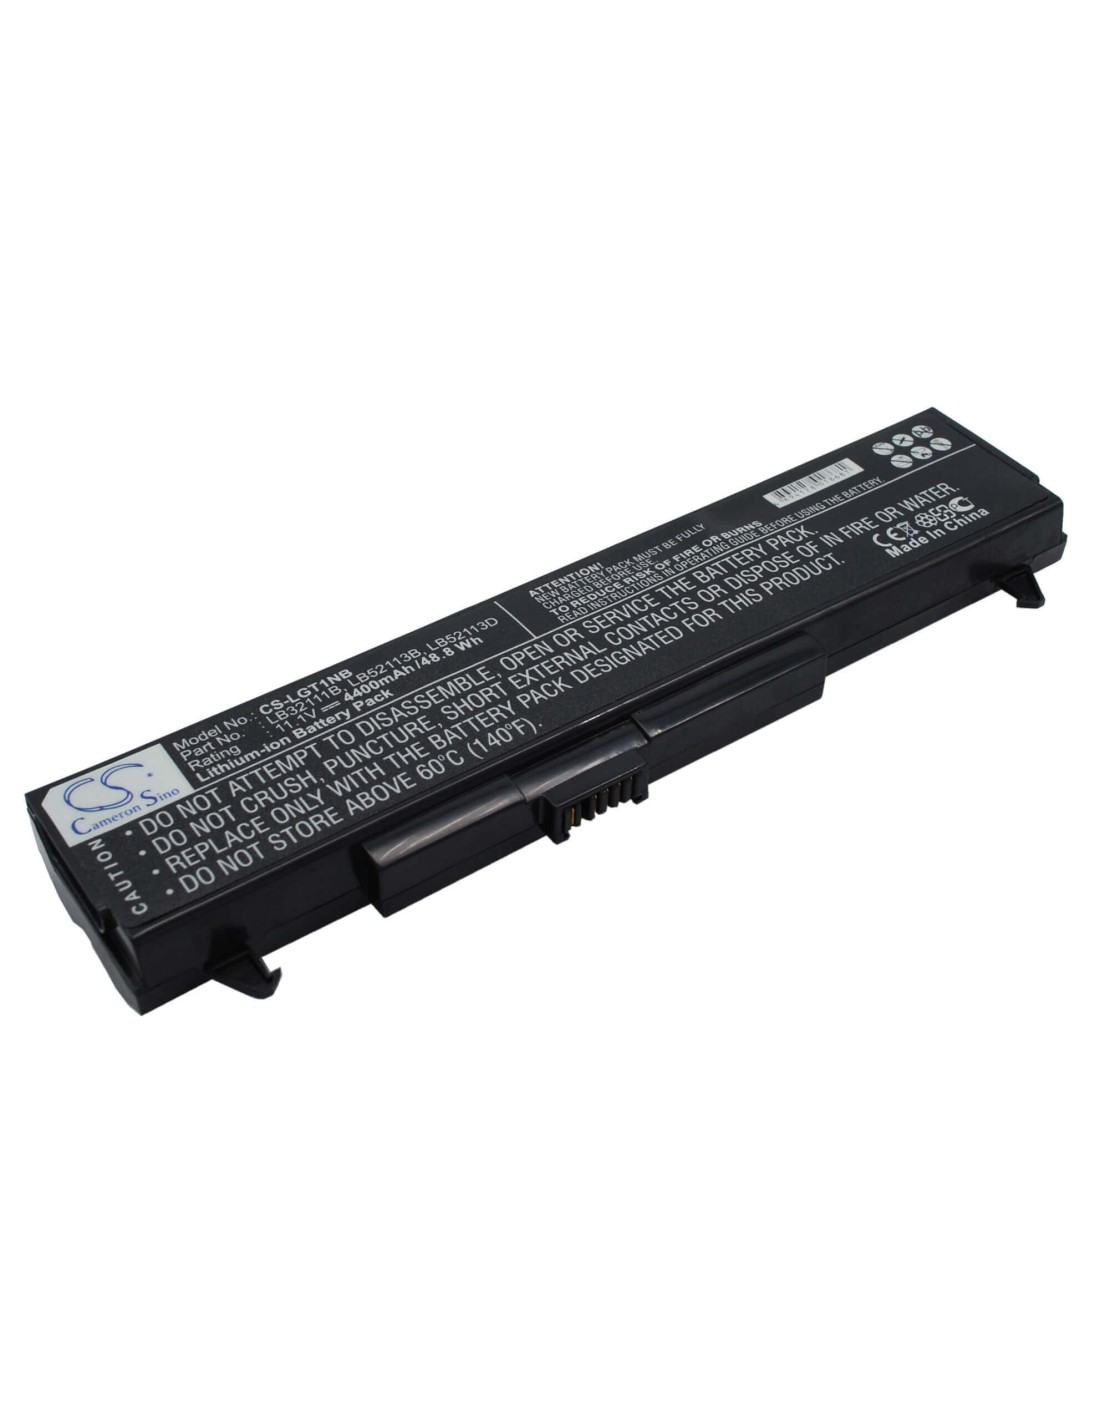 Black Battery for HP Presario B2000 11.1V, 4400mAh - 48.84Wh